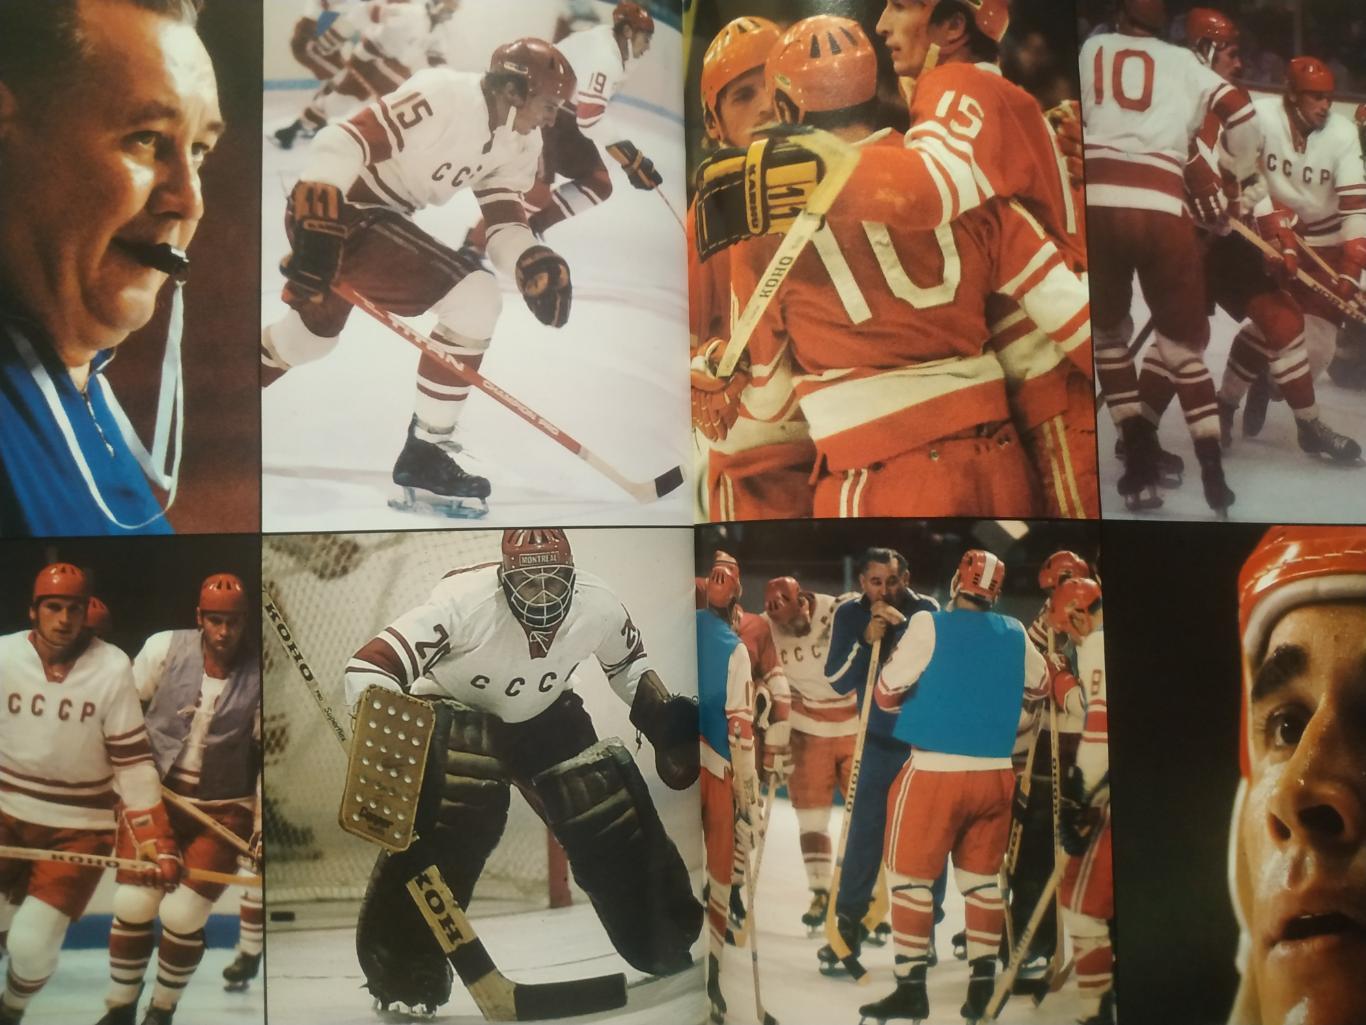 ПРОГРАММА МАТЧА НХЛ КРЫЛЬЯ СОВЕТОВ - БОСТОН 1975-76 NHL SUPER SERIE PROGRAM 6